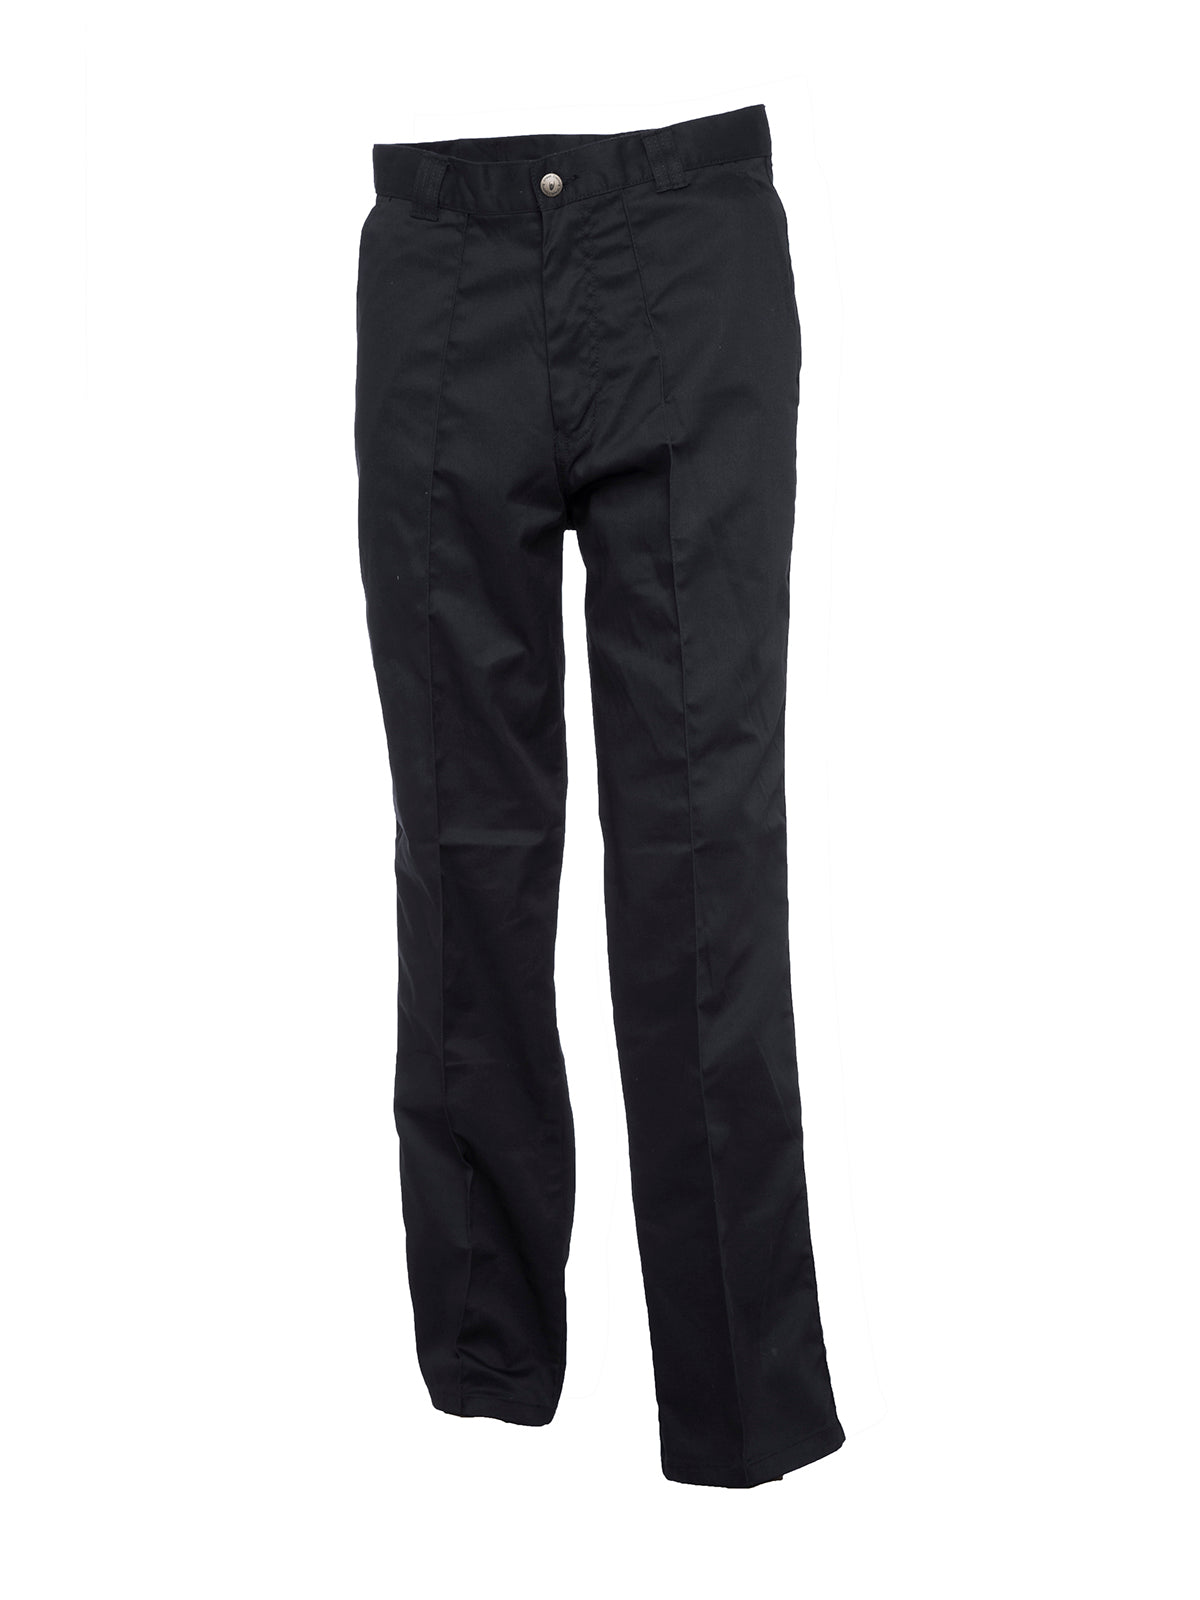 Uneek Workwear Trouser Long UC901L - Black